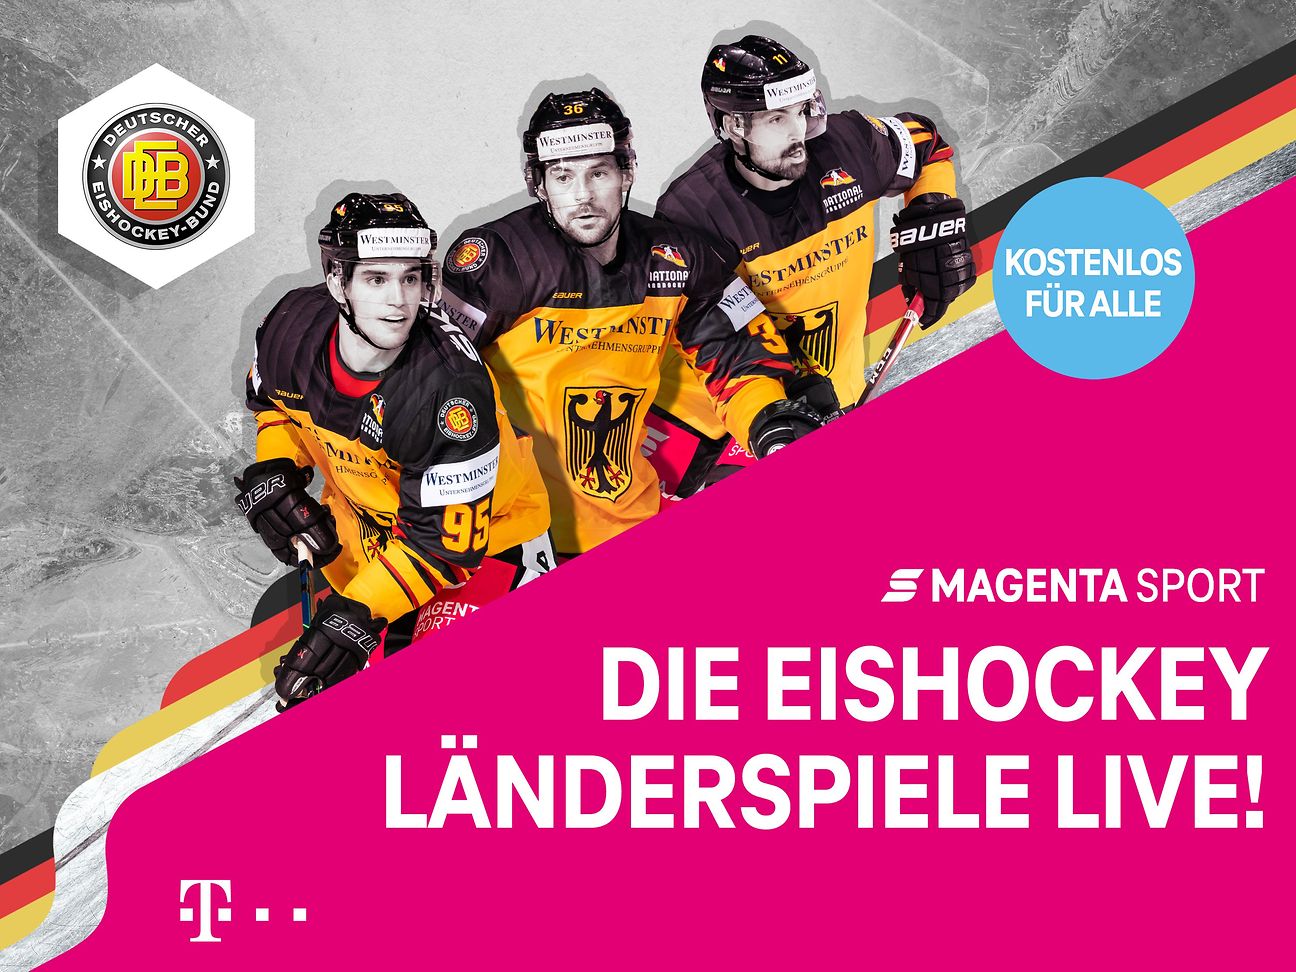 Magenta Sport Die Eishockey-Länderspiele live im FreeTV! Deutsche Telekom